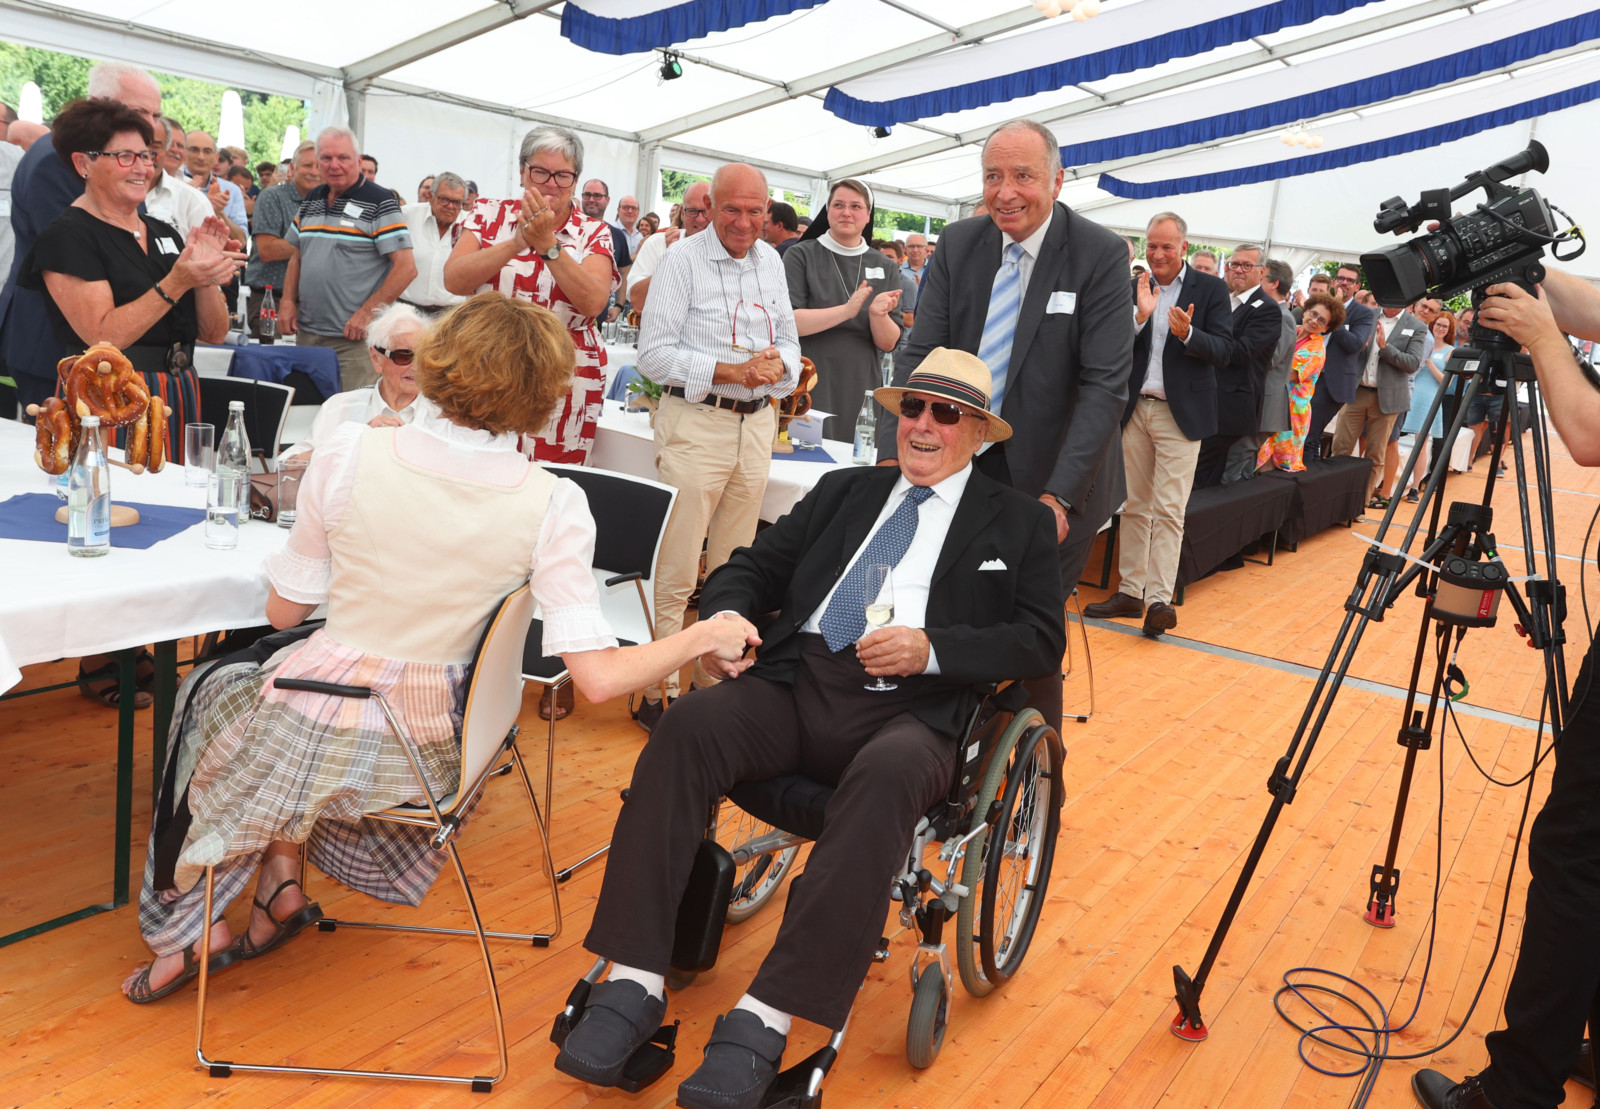 Trotz der beschwerlichen Hitze erschien der 96-jährige Senior Mayr beim Fest.